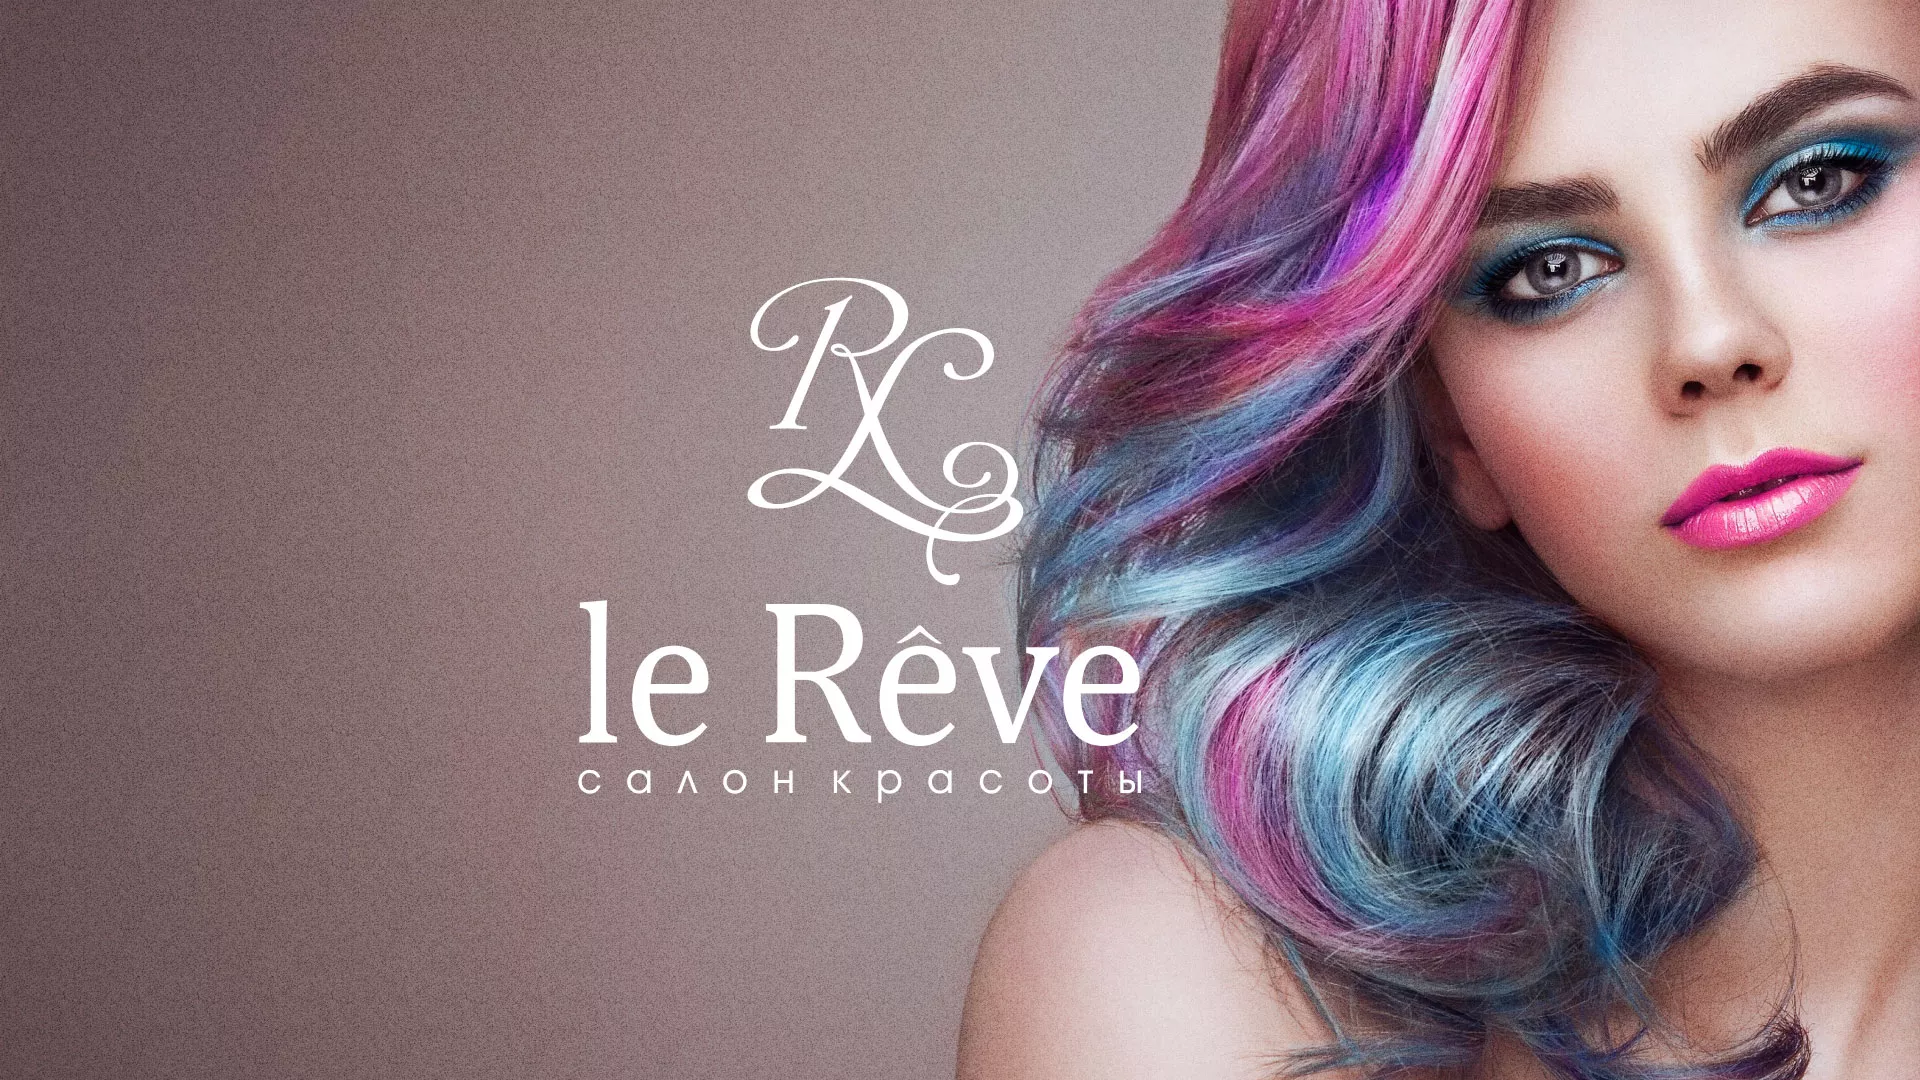 Создание сайта для салона красоты «Le Reve» в Владимире